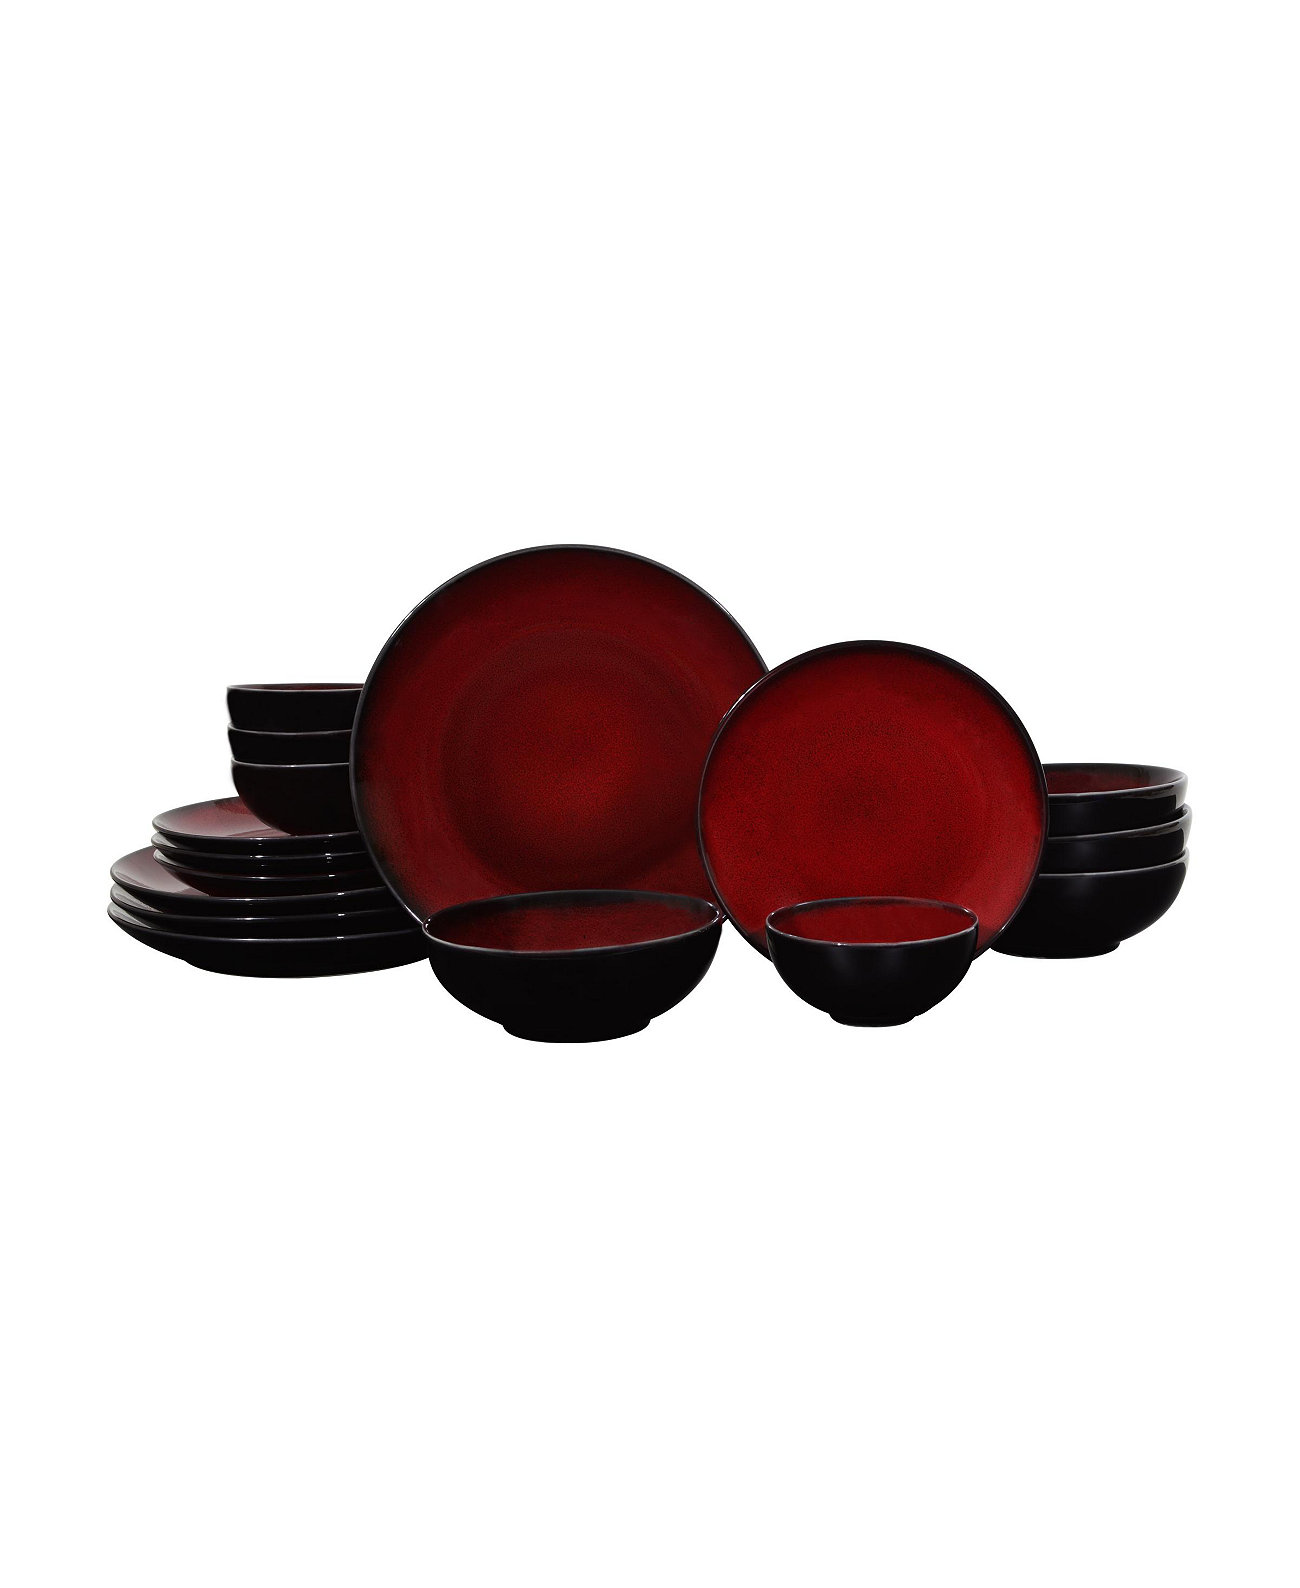 222 Пятый набор столовой посуды Soma Red из 16 предметов, сервиз для 4 человек Sango